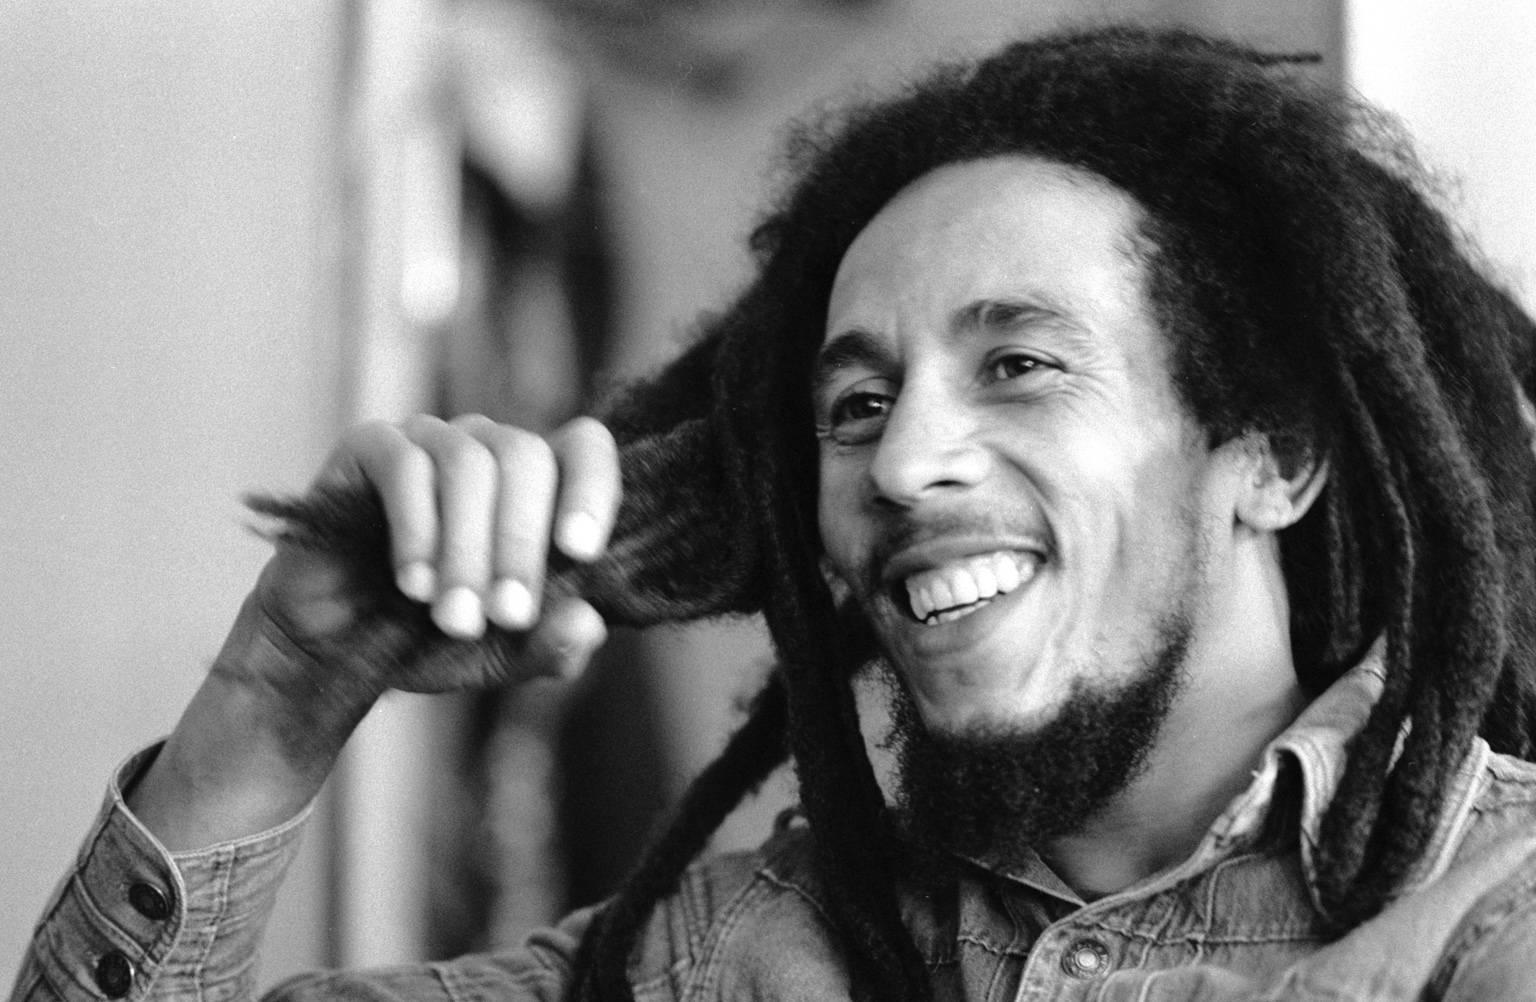 Bill Kennedy Portrait Photograph - 'Bob Marley' 1978 Silver Gelatin Print Limited Edition